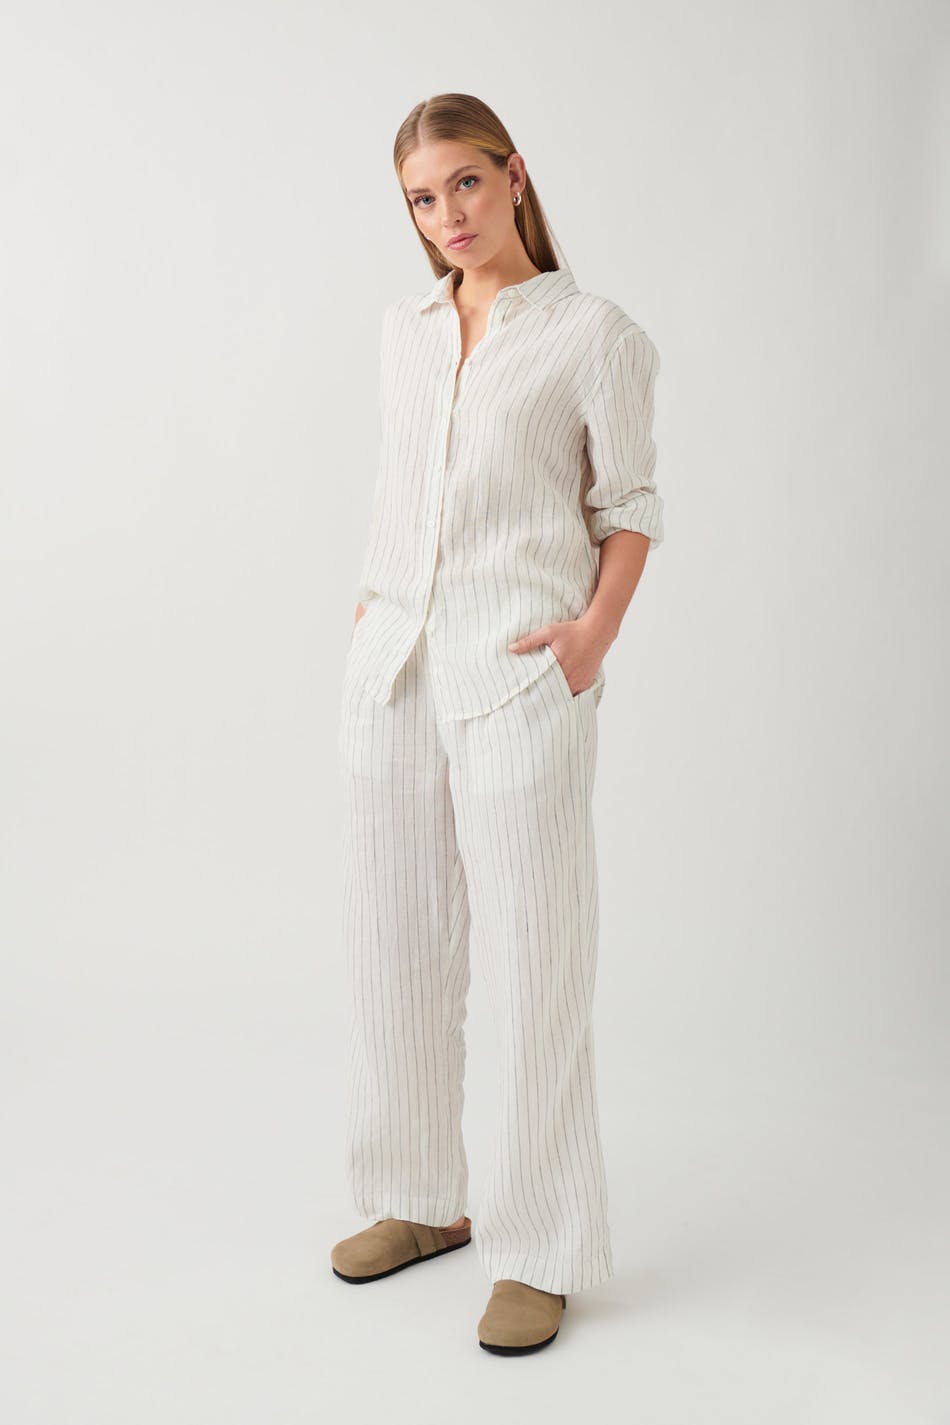 Gina Tricot - Linen trousers - linnebyxor - White - S - Female